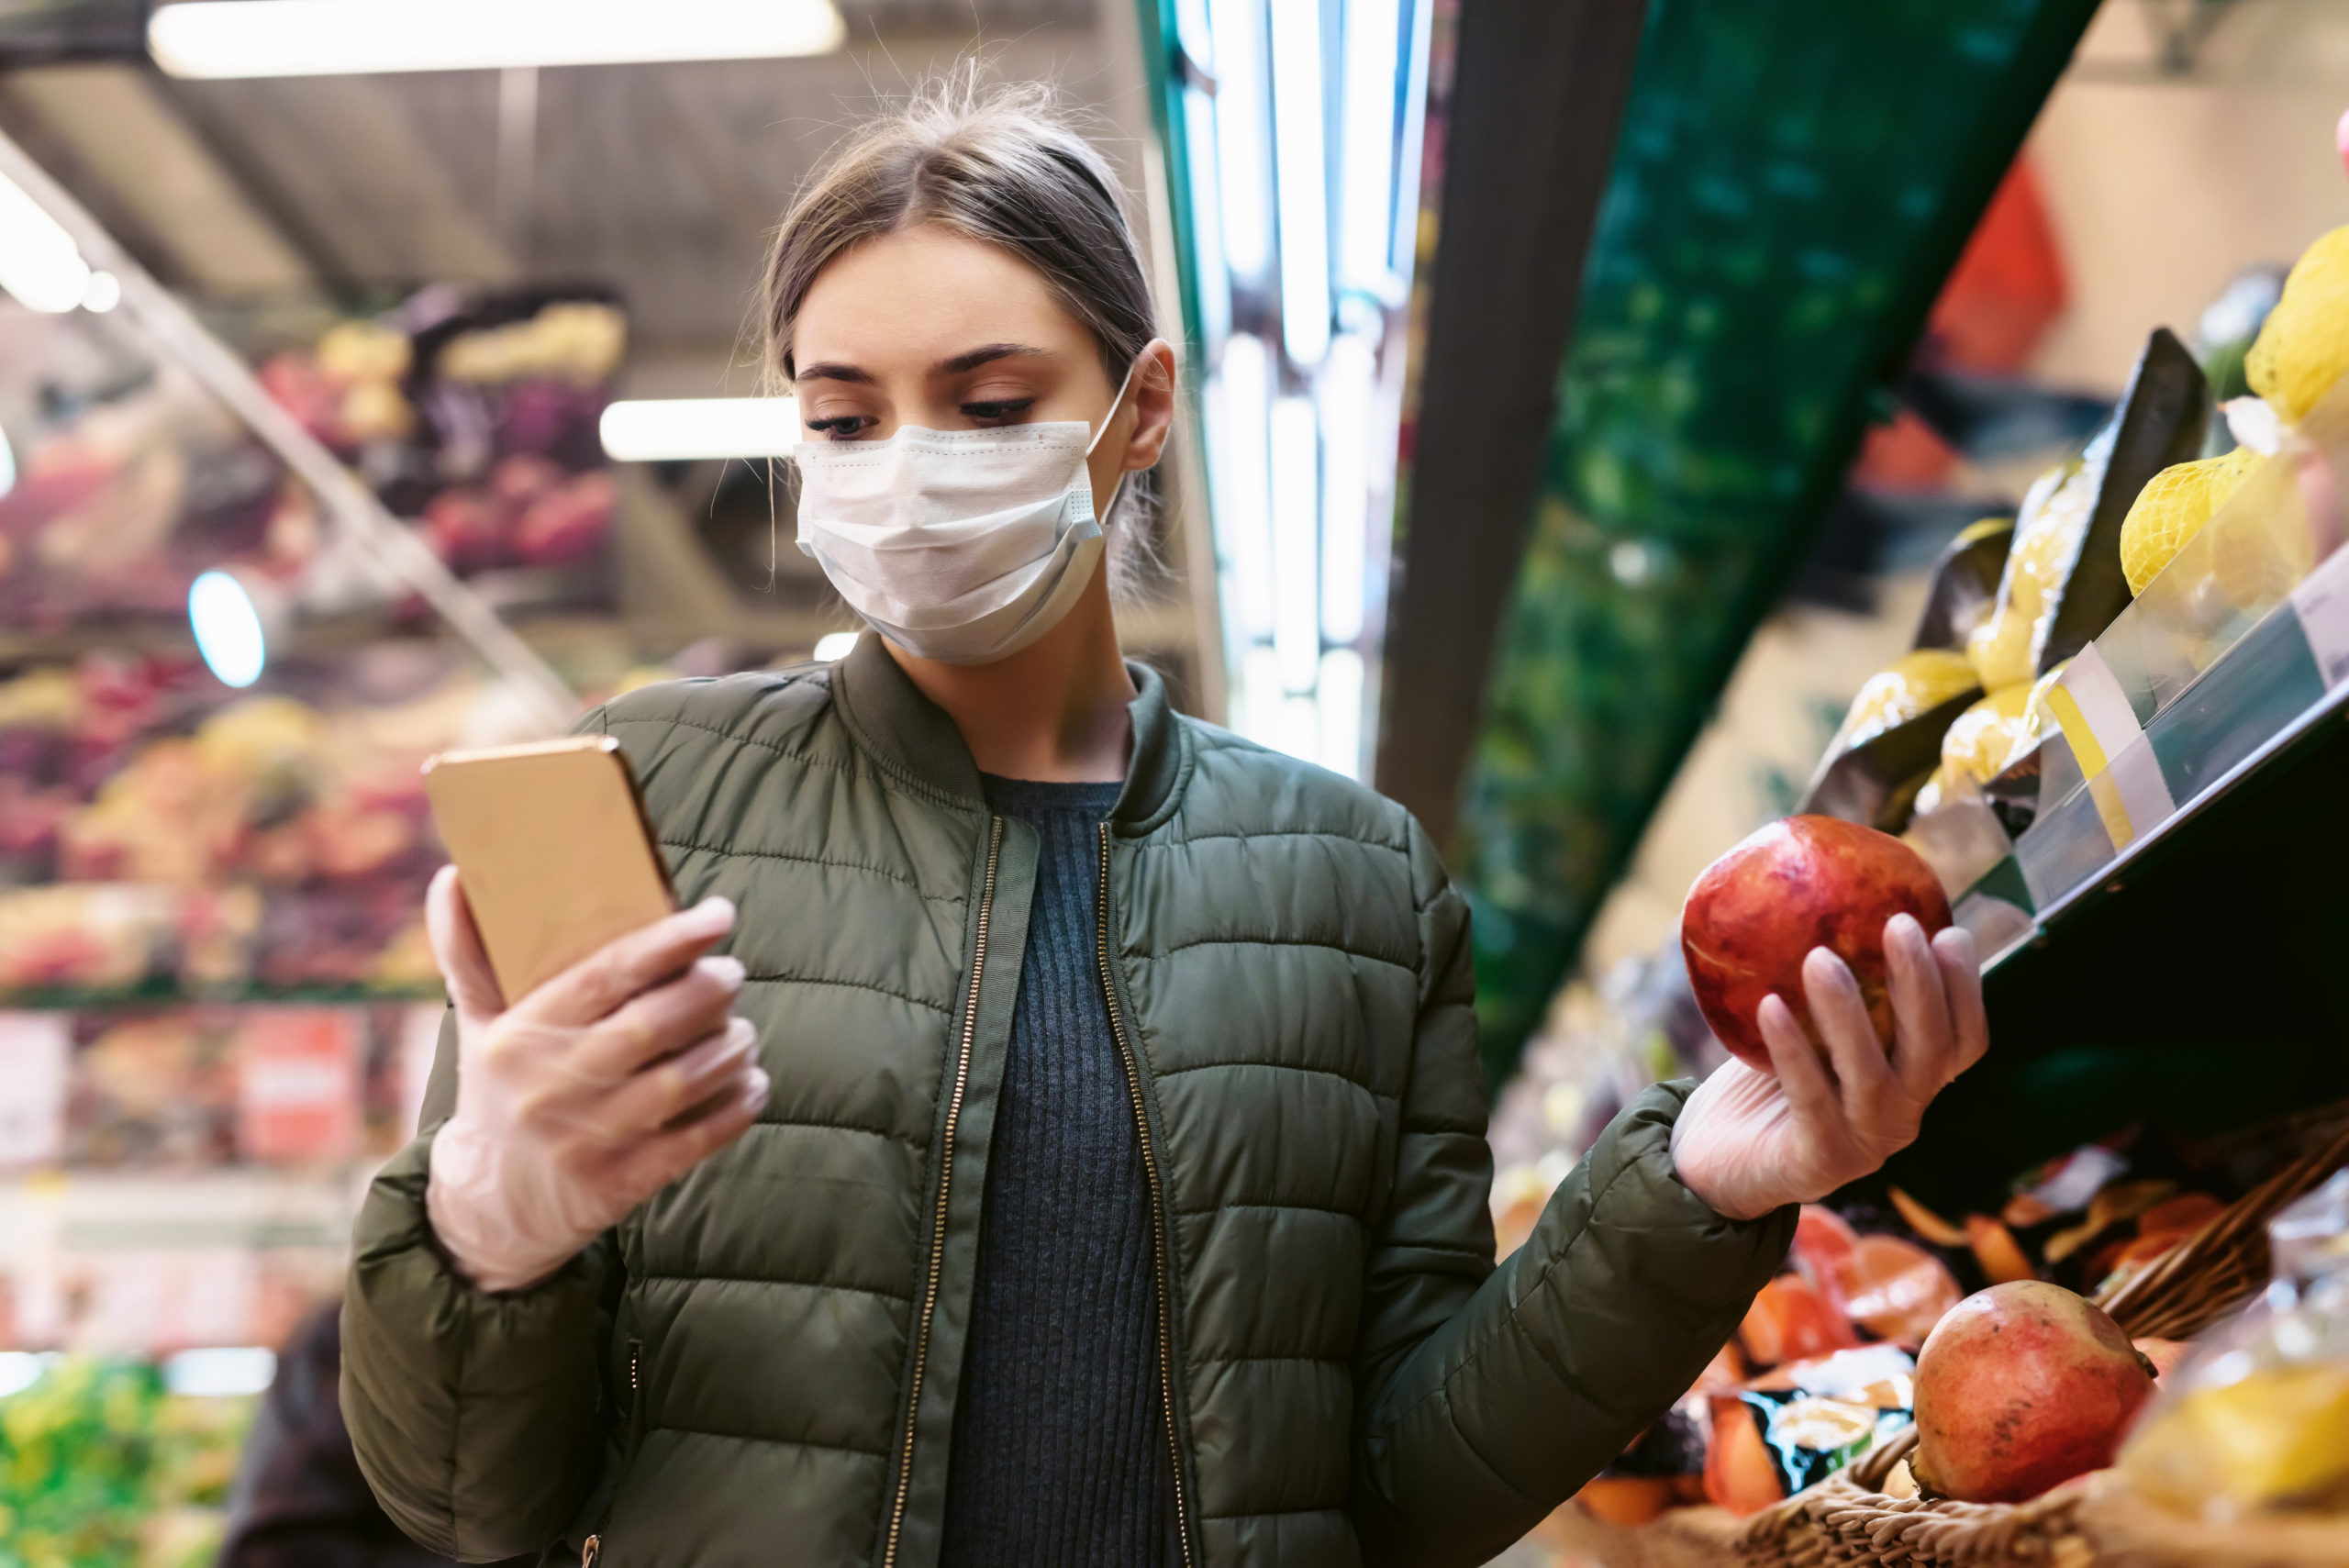 Eine junge Frau in einer Einwegmaske benutzt eine Inddor-Navigation und Tracking-App beim Einkaufen im Laden